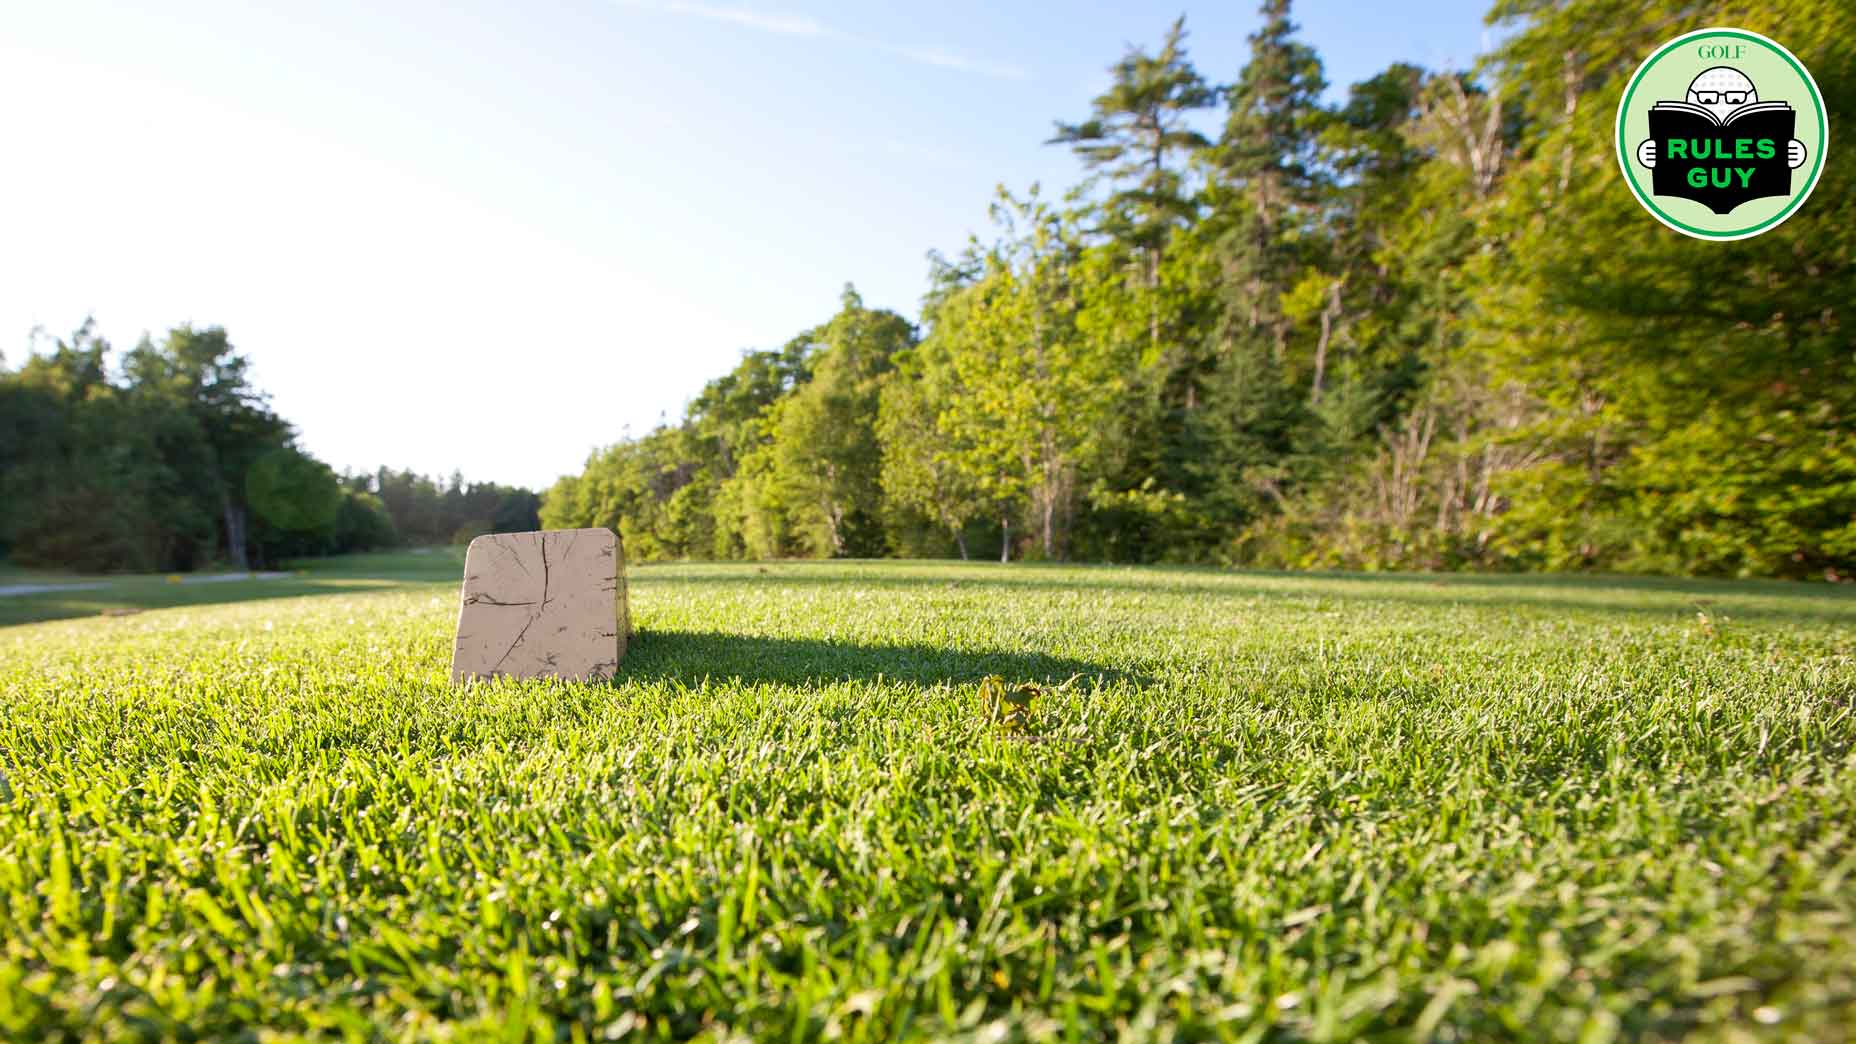 A view of a tee box on a non-descript golf course